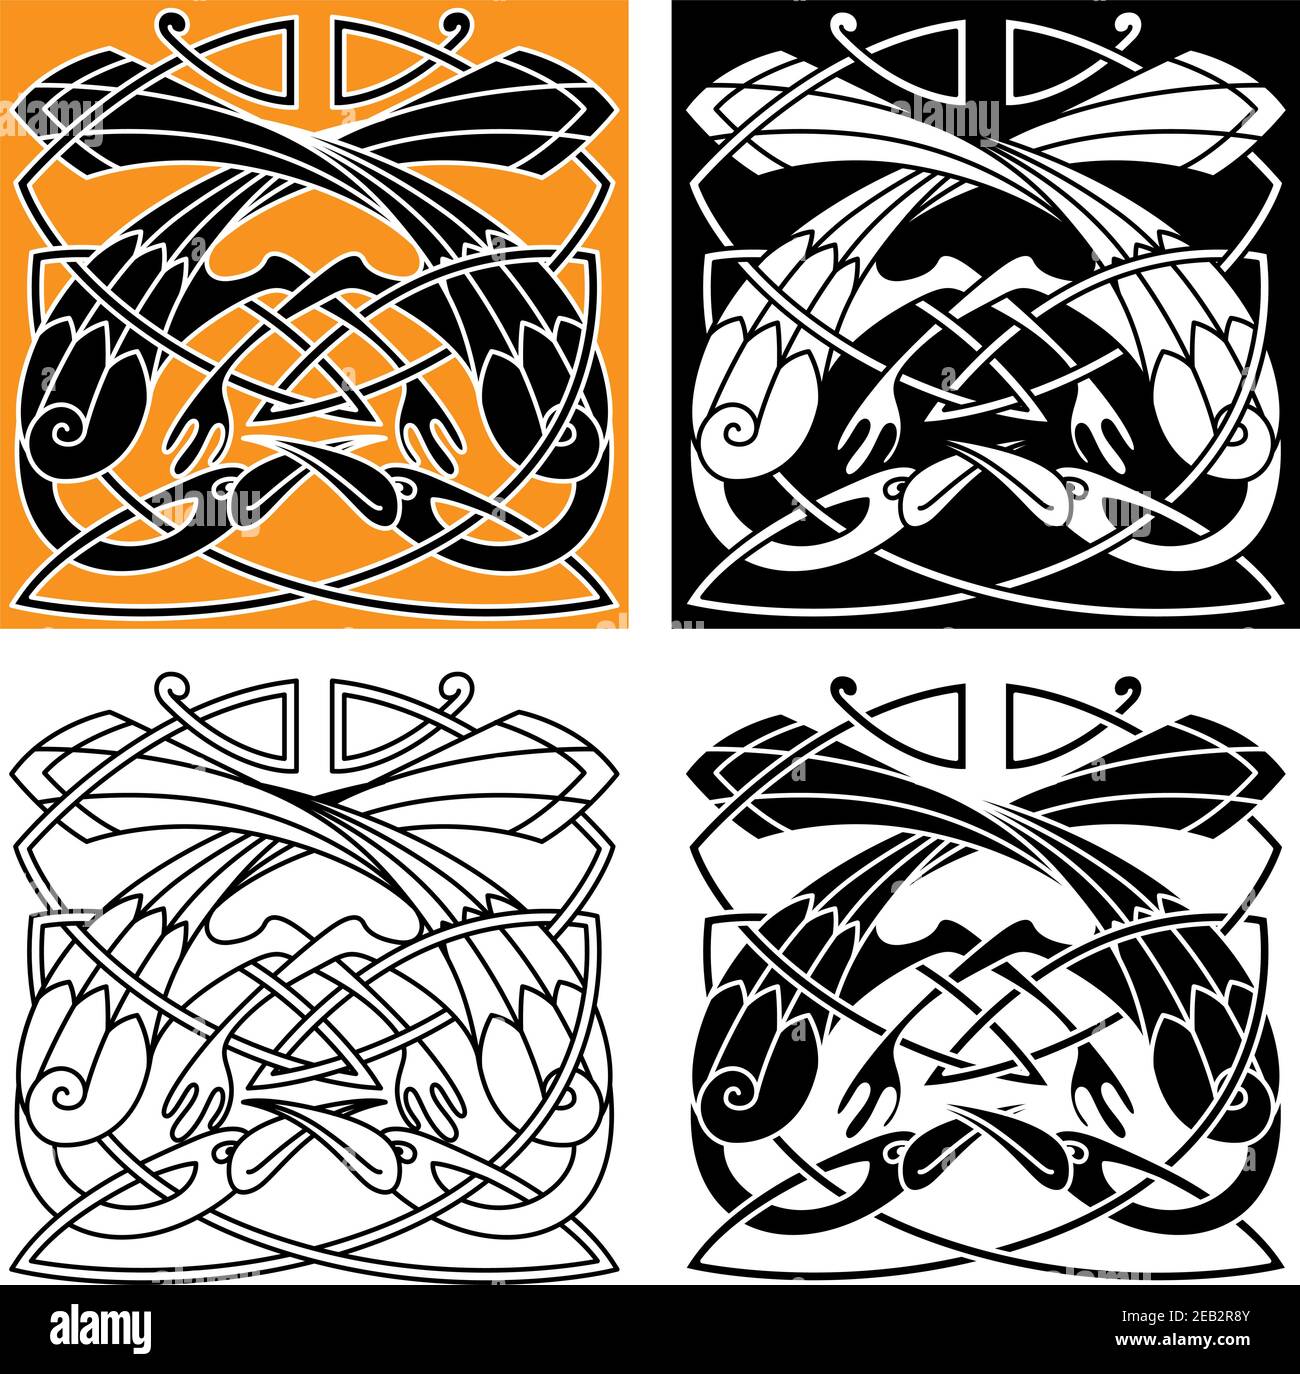 Keltischer Vintage-Schmuck mit spielenden Reihervögeln, verflochten von Kämmen im Stammesmuster. Für mittelalterliche Tattoo oder heraldry Themen Design Stock Vektor